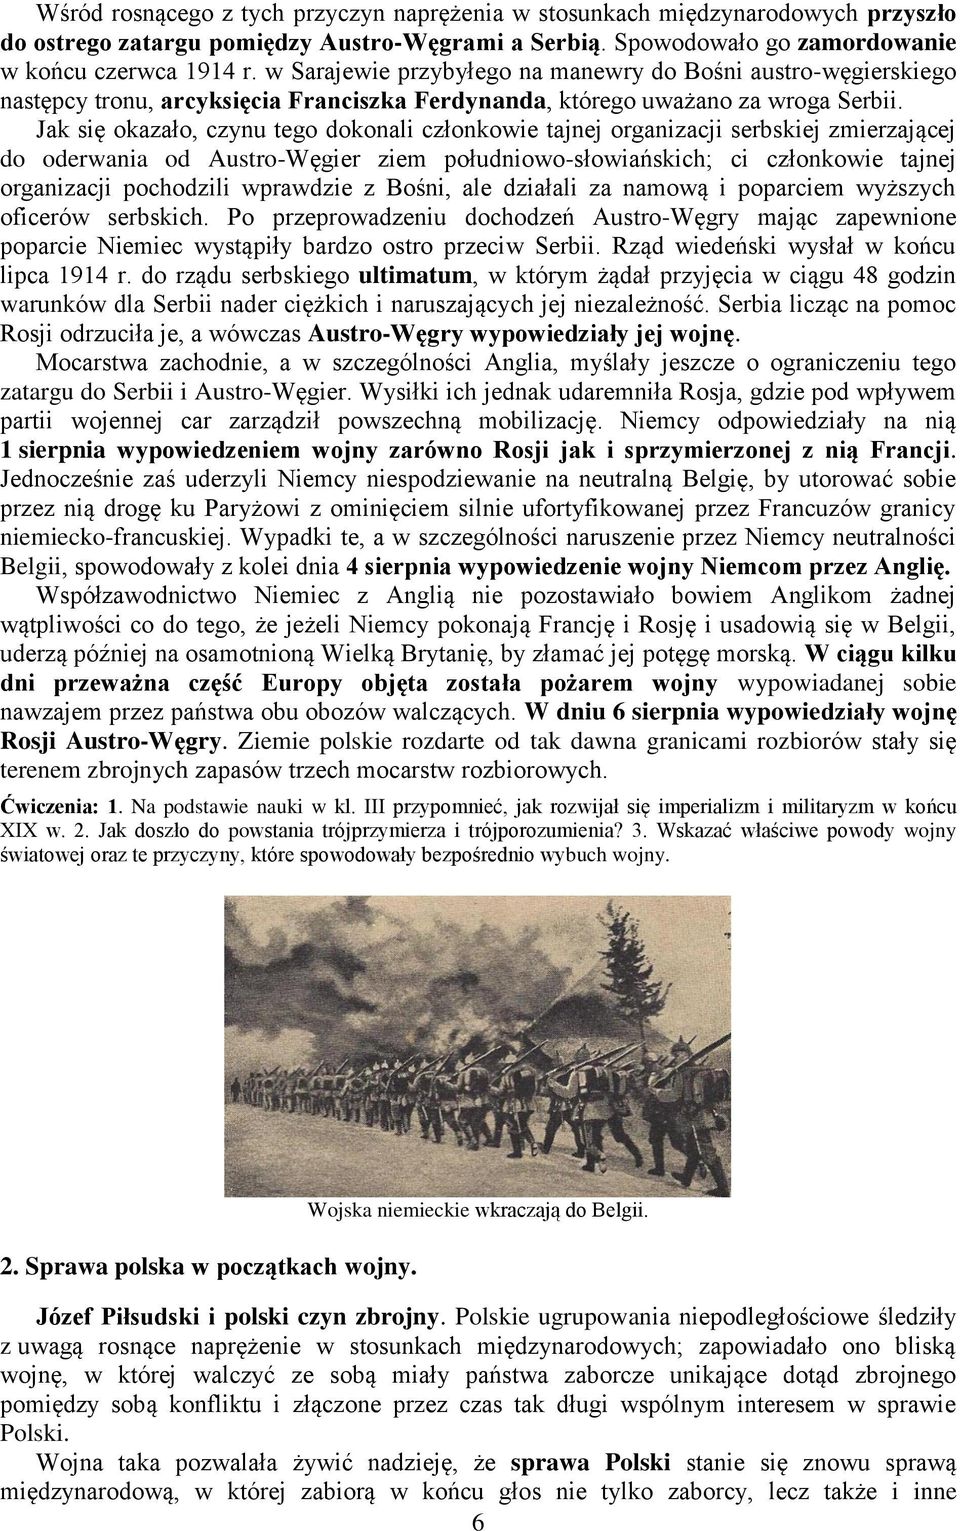 Jak się okazało, czynu tego dokonali członkowie tajnej organizacji serbskiej zmierzającej do oderwania od Austro-Węgier ziem południowo-słowiańskich; ci członkowie tajnej organizacji pochodzili